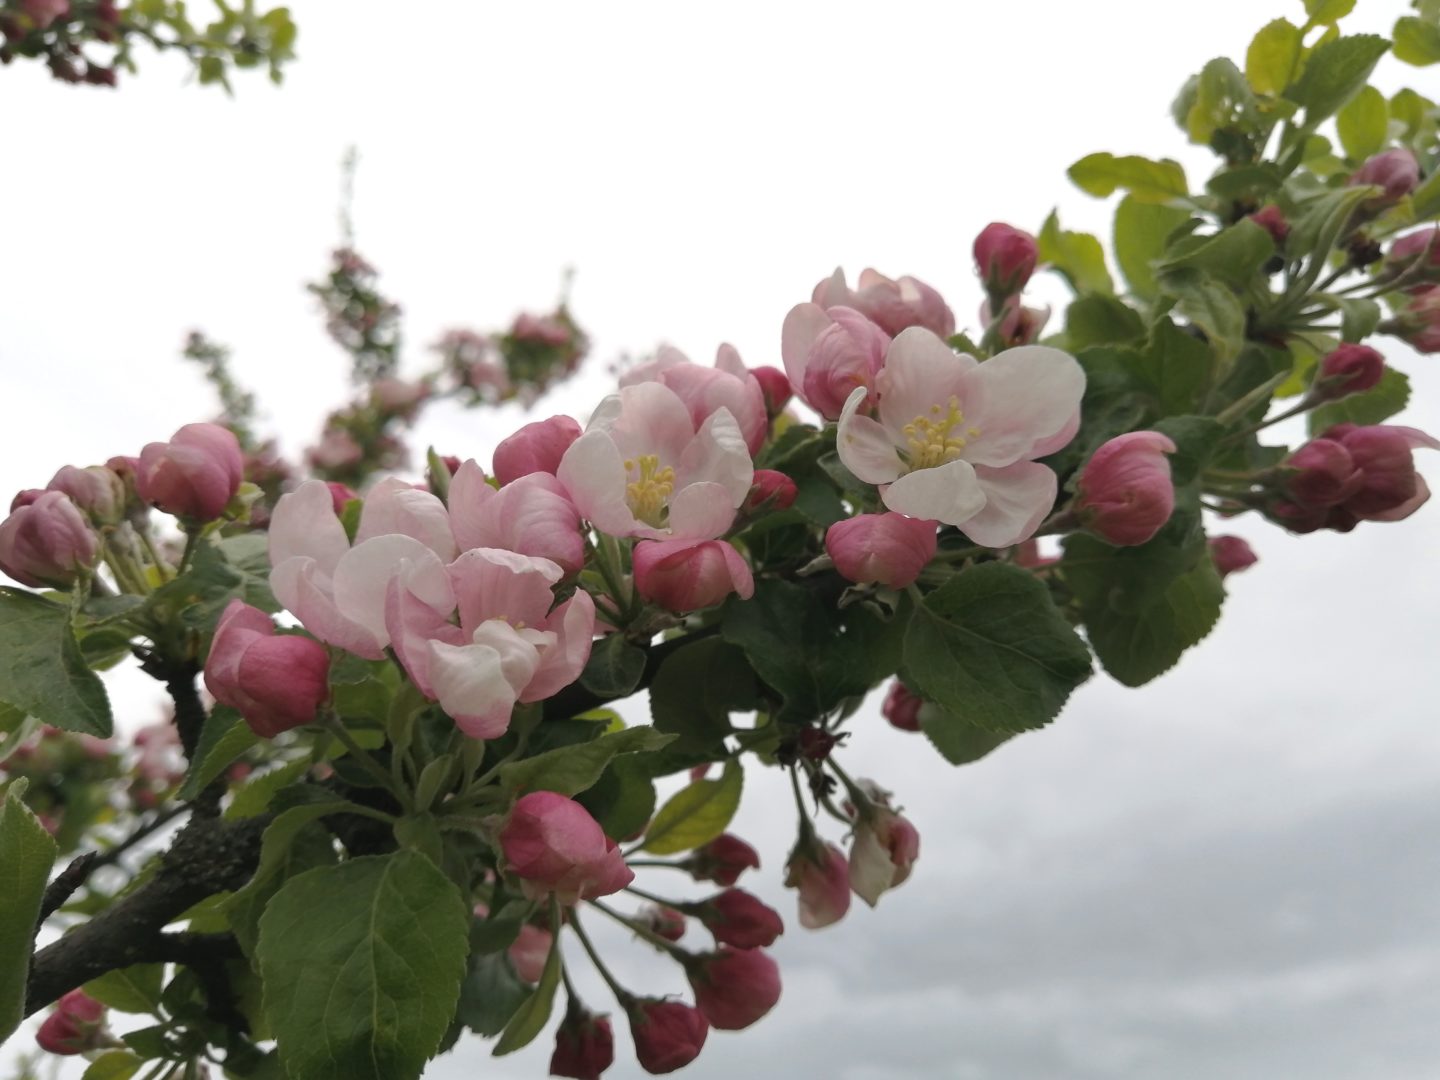 На ветках яблони цветки распускаются неравномерно